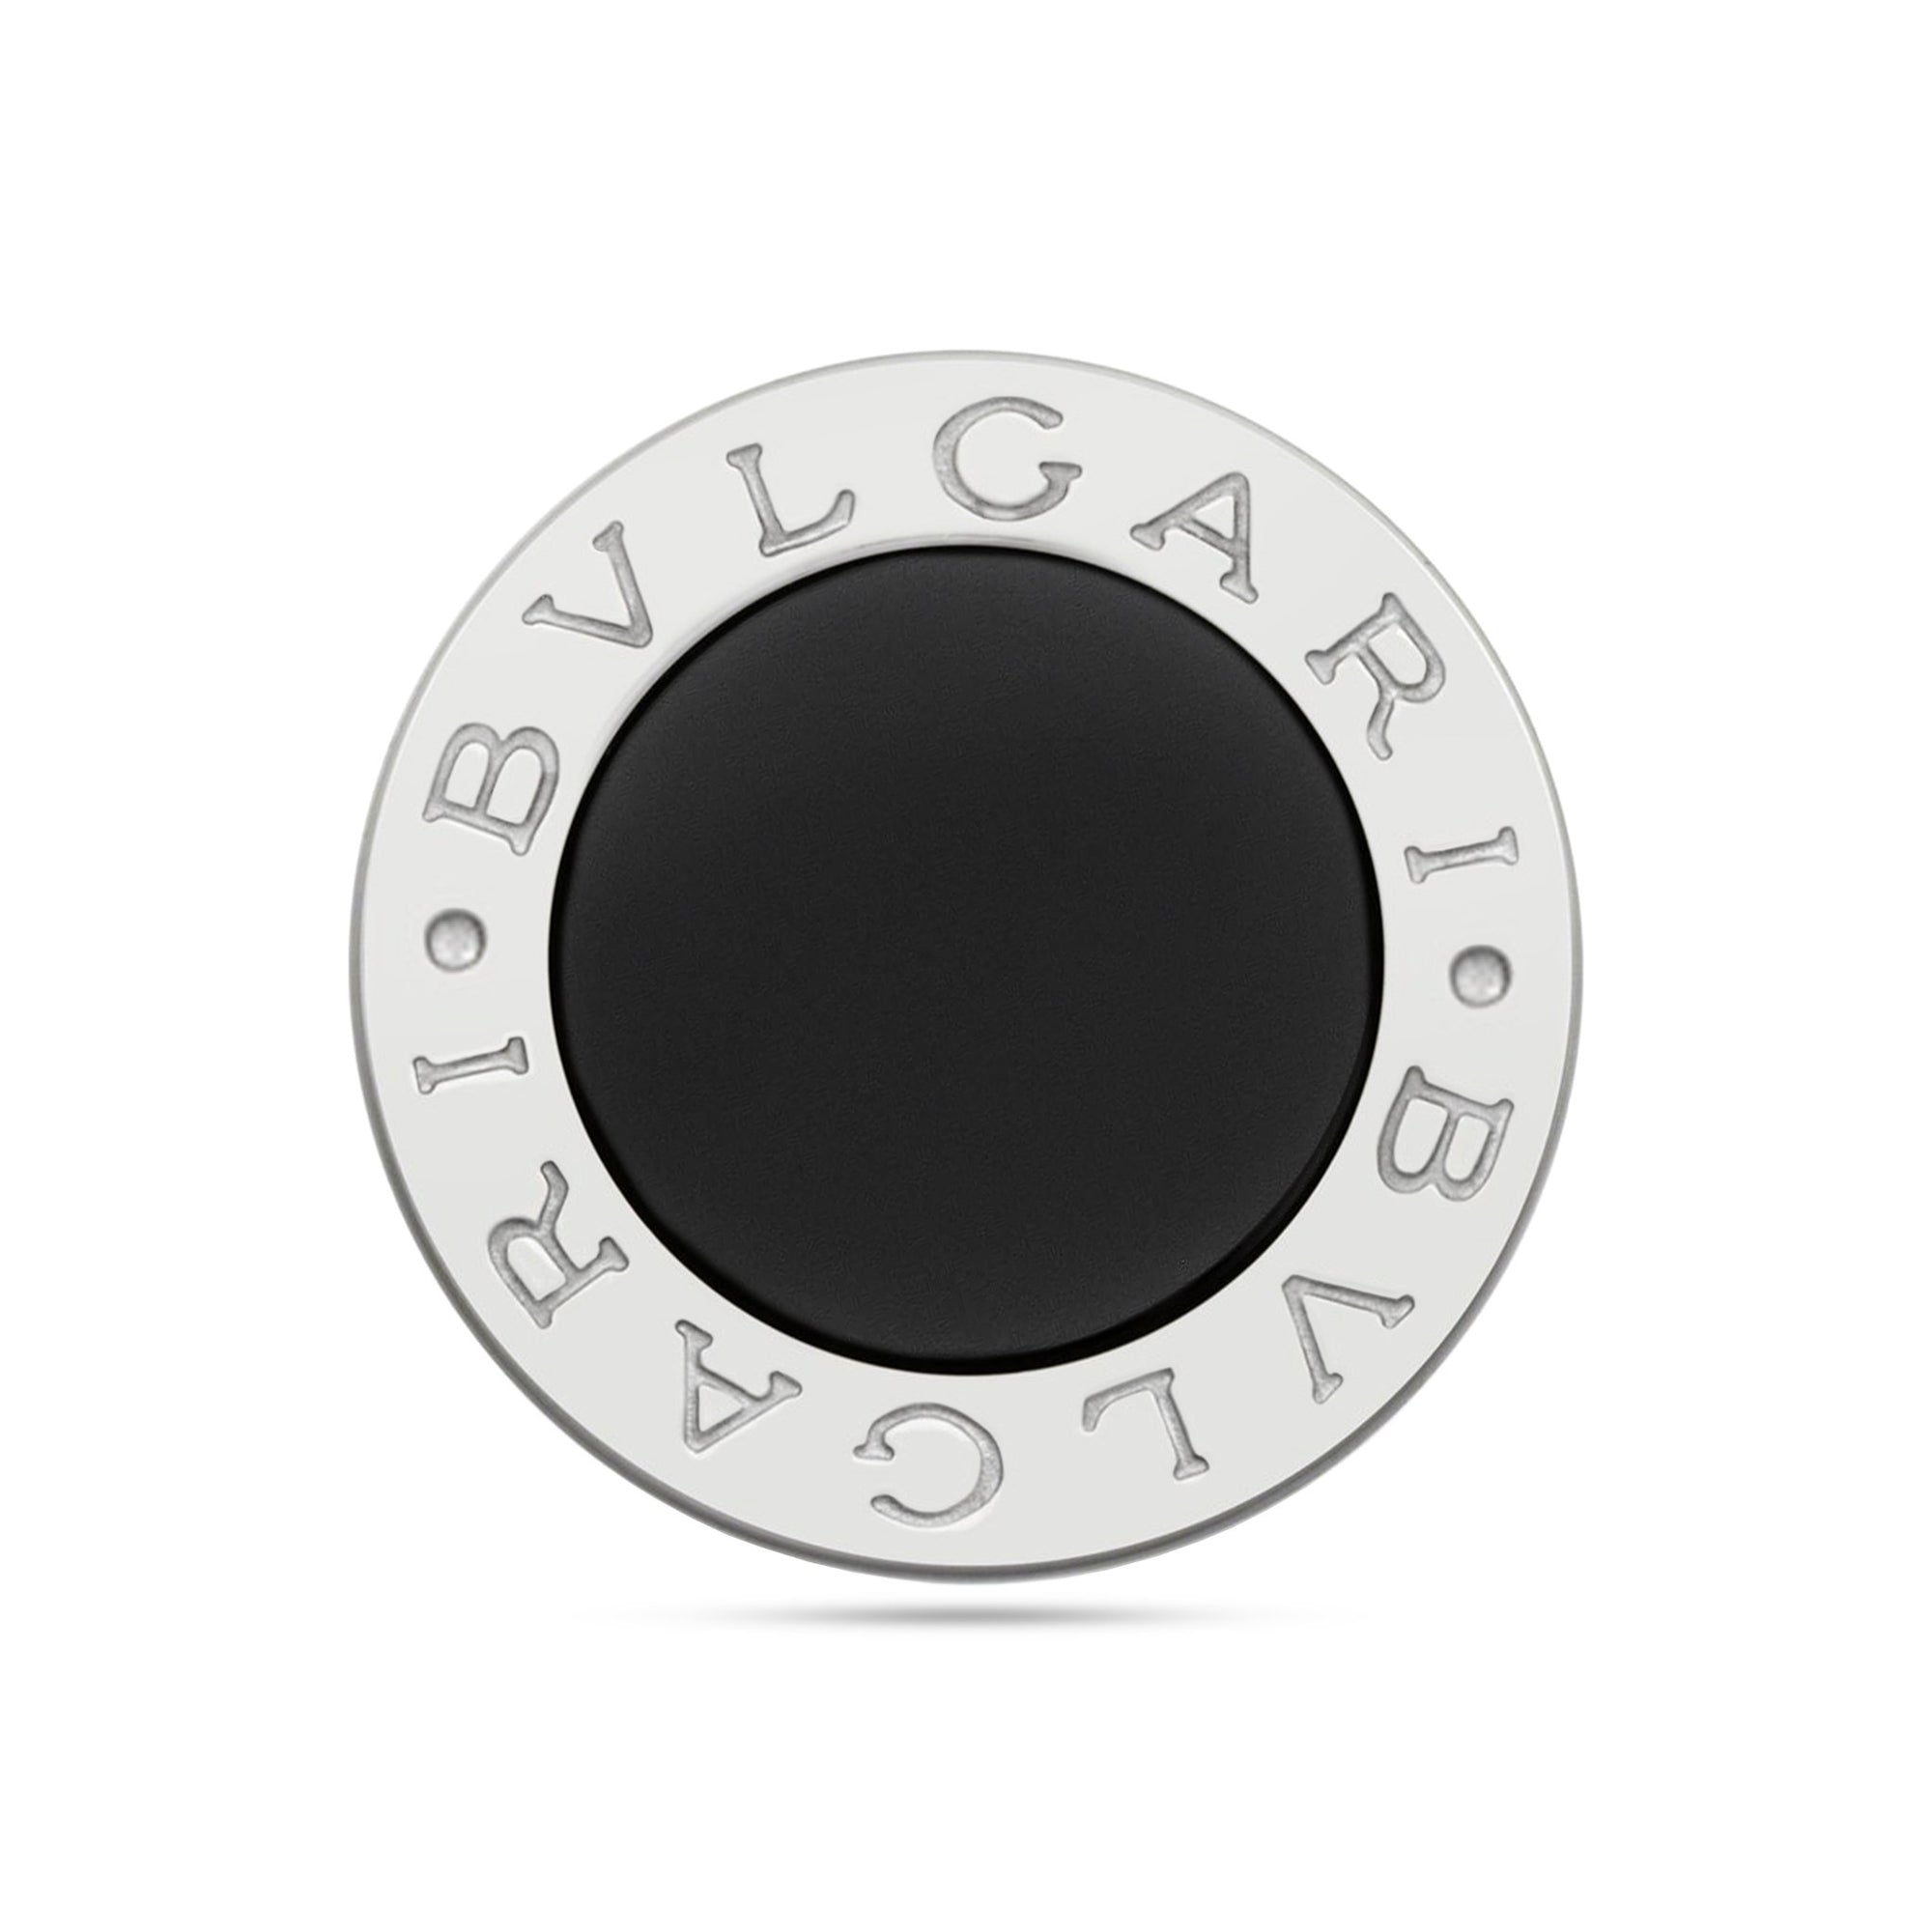 Bvlgari Bvlgari 18ct White Gold Large Black Onyx Ring